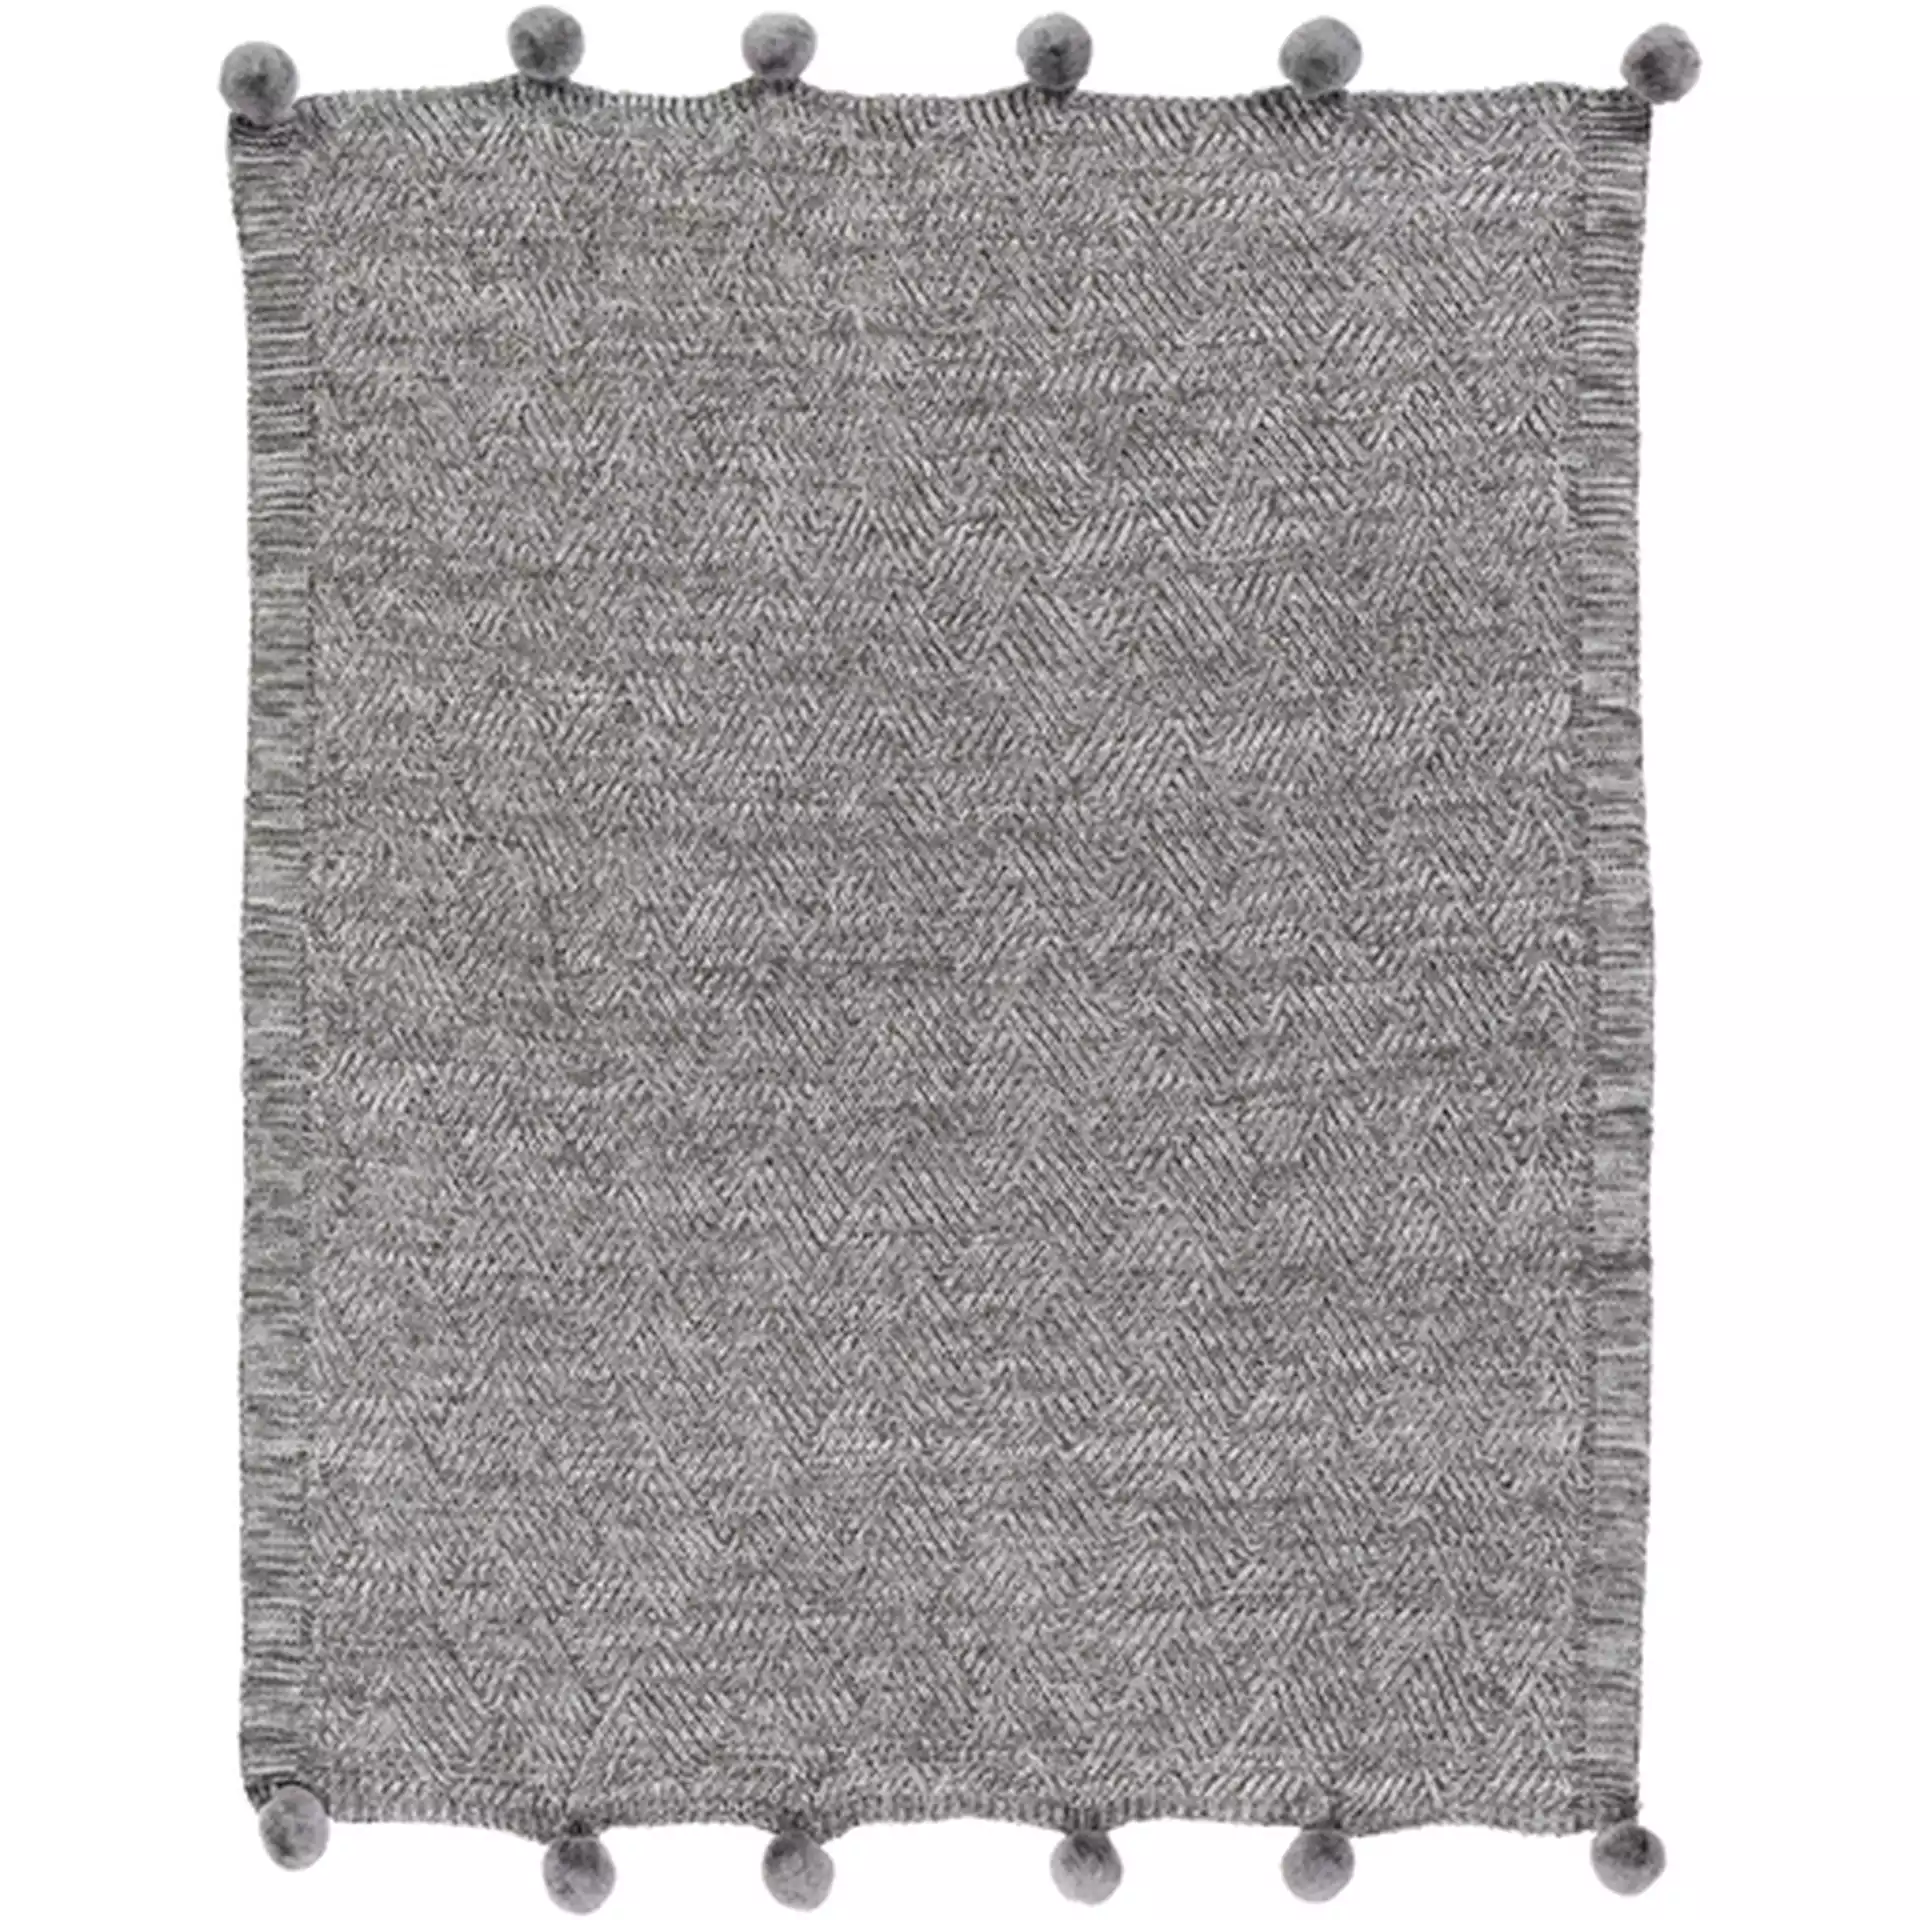 Poppy Modern Classic Charcoal Grey Knitted Pom Pom Edge Throw Blanket